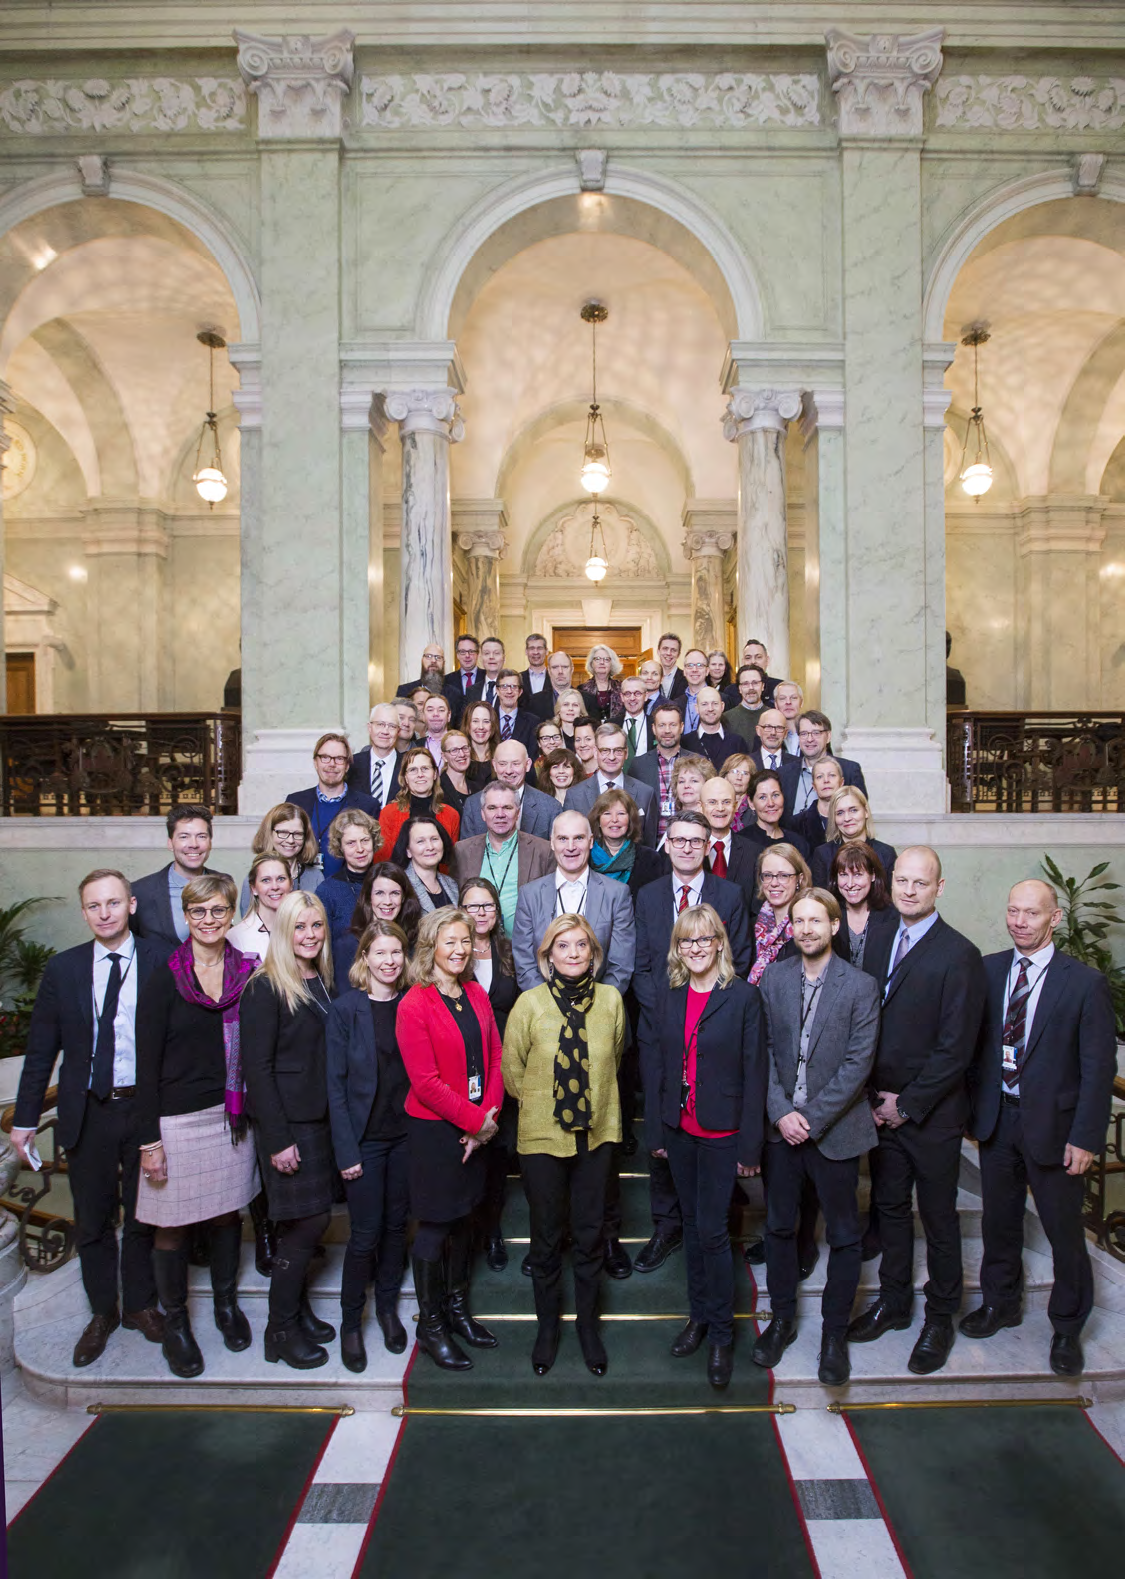 I Riksdagsförvaltningen arbetar drygt 630 personer med olika yrken och kompetenser i ett gemensamt uppdrag att stödja den parlamentariska processen.